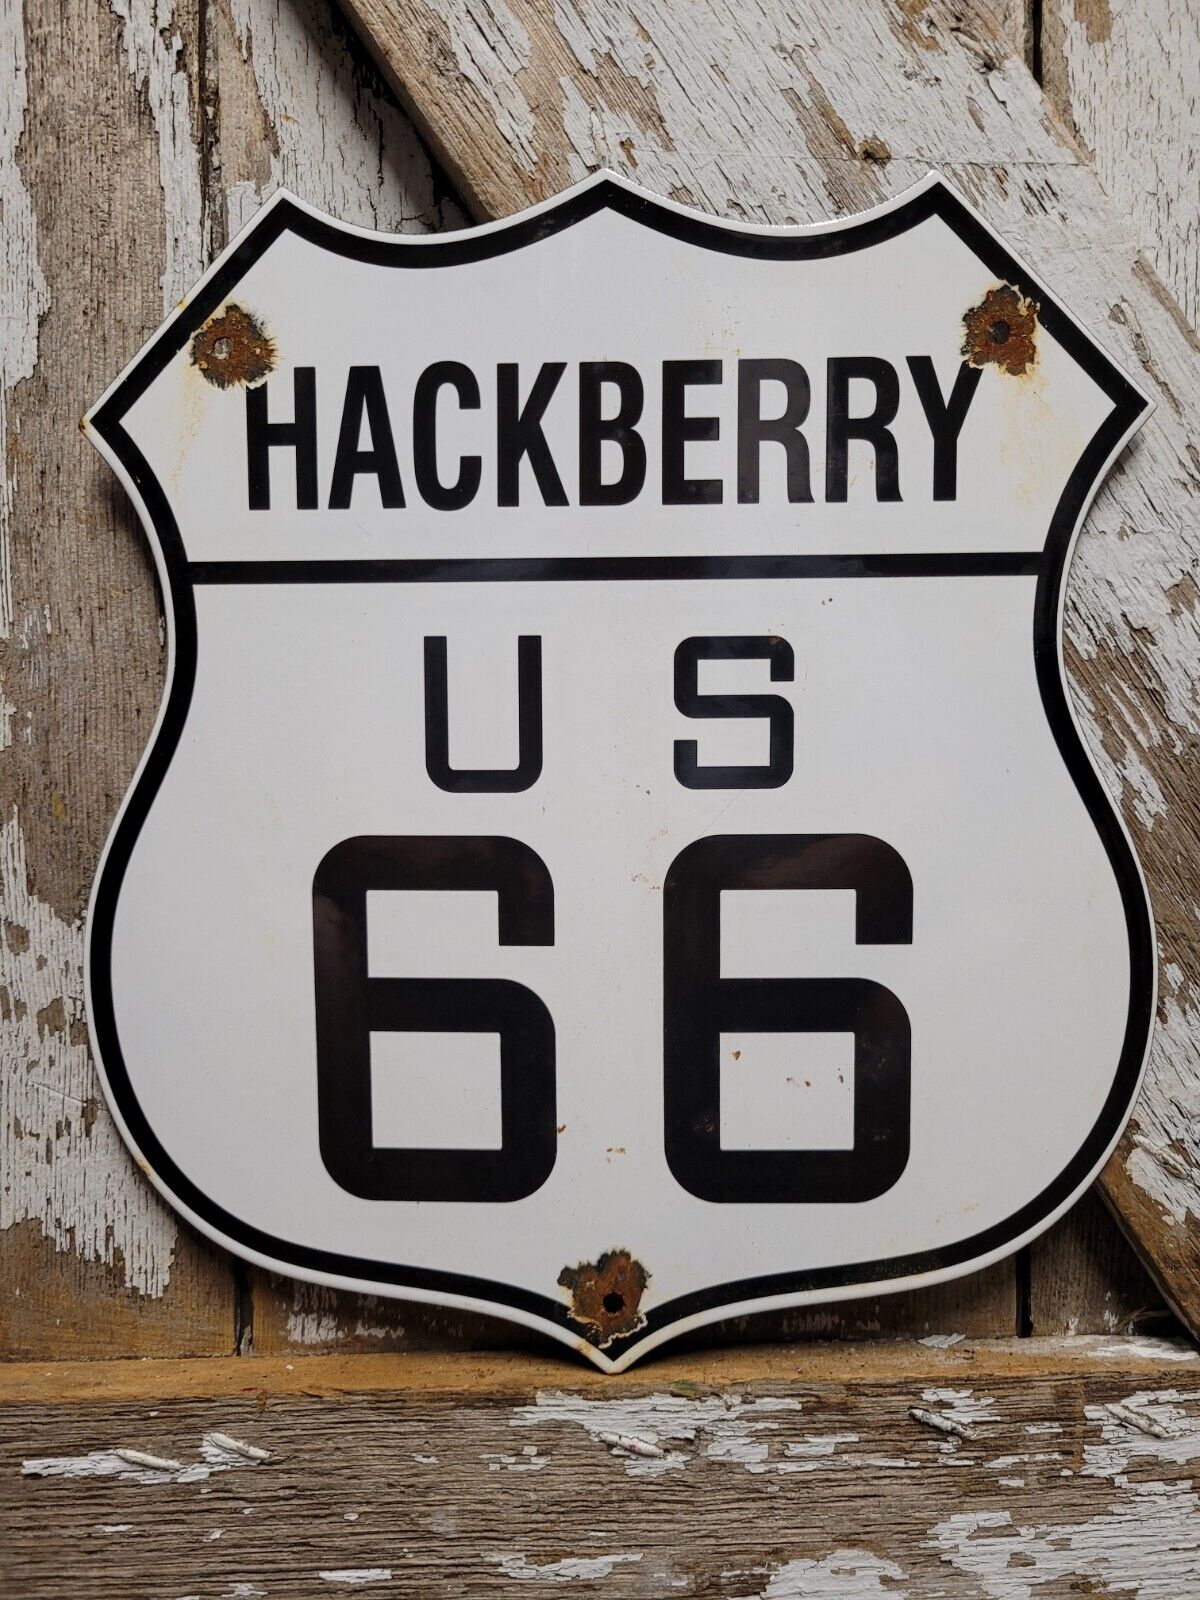 VINTAGE HACKBERRY ROUTE 66 PORCELAIN SIGN US HIGHWAY ROAD TRANSIT SHIELD MARKER